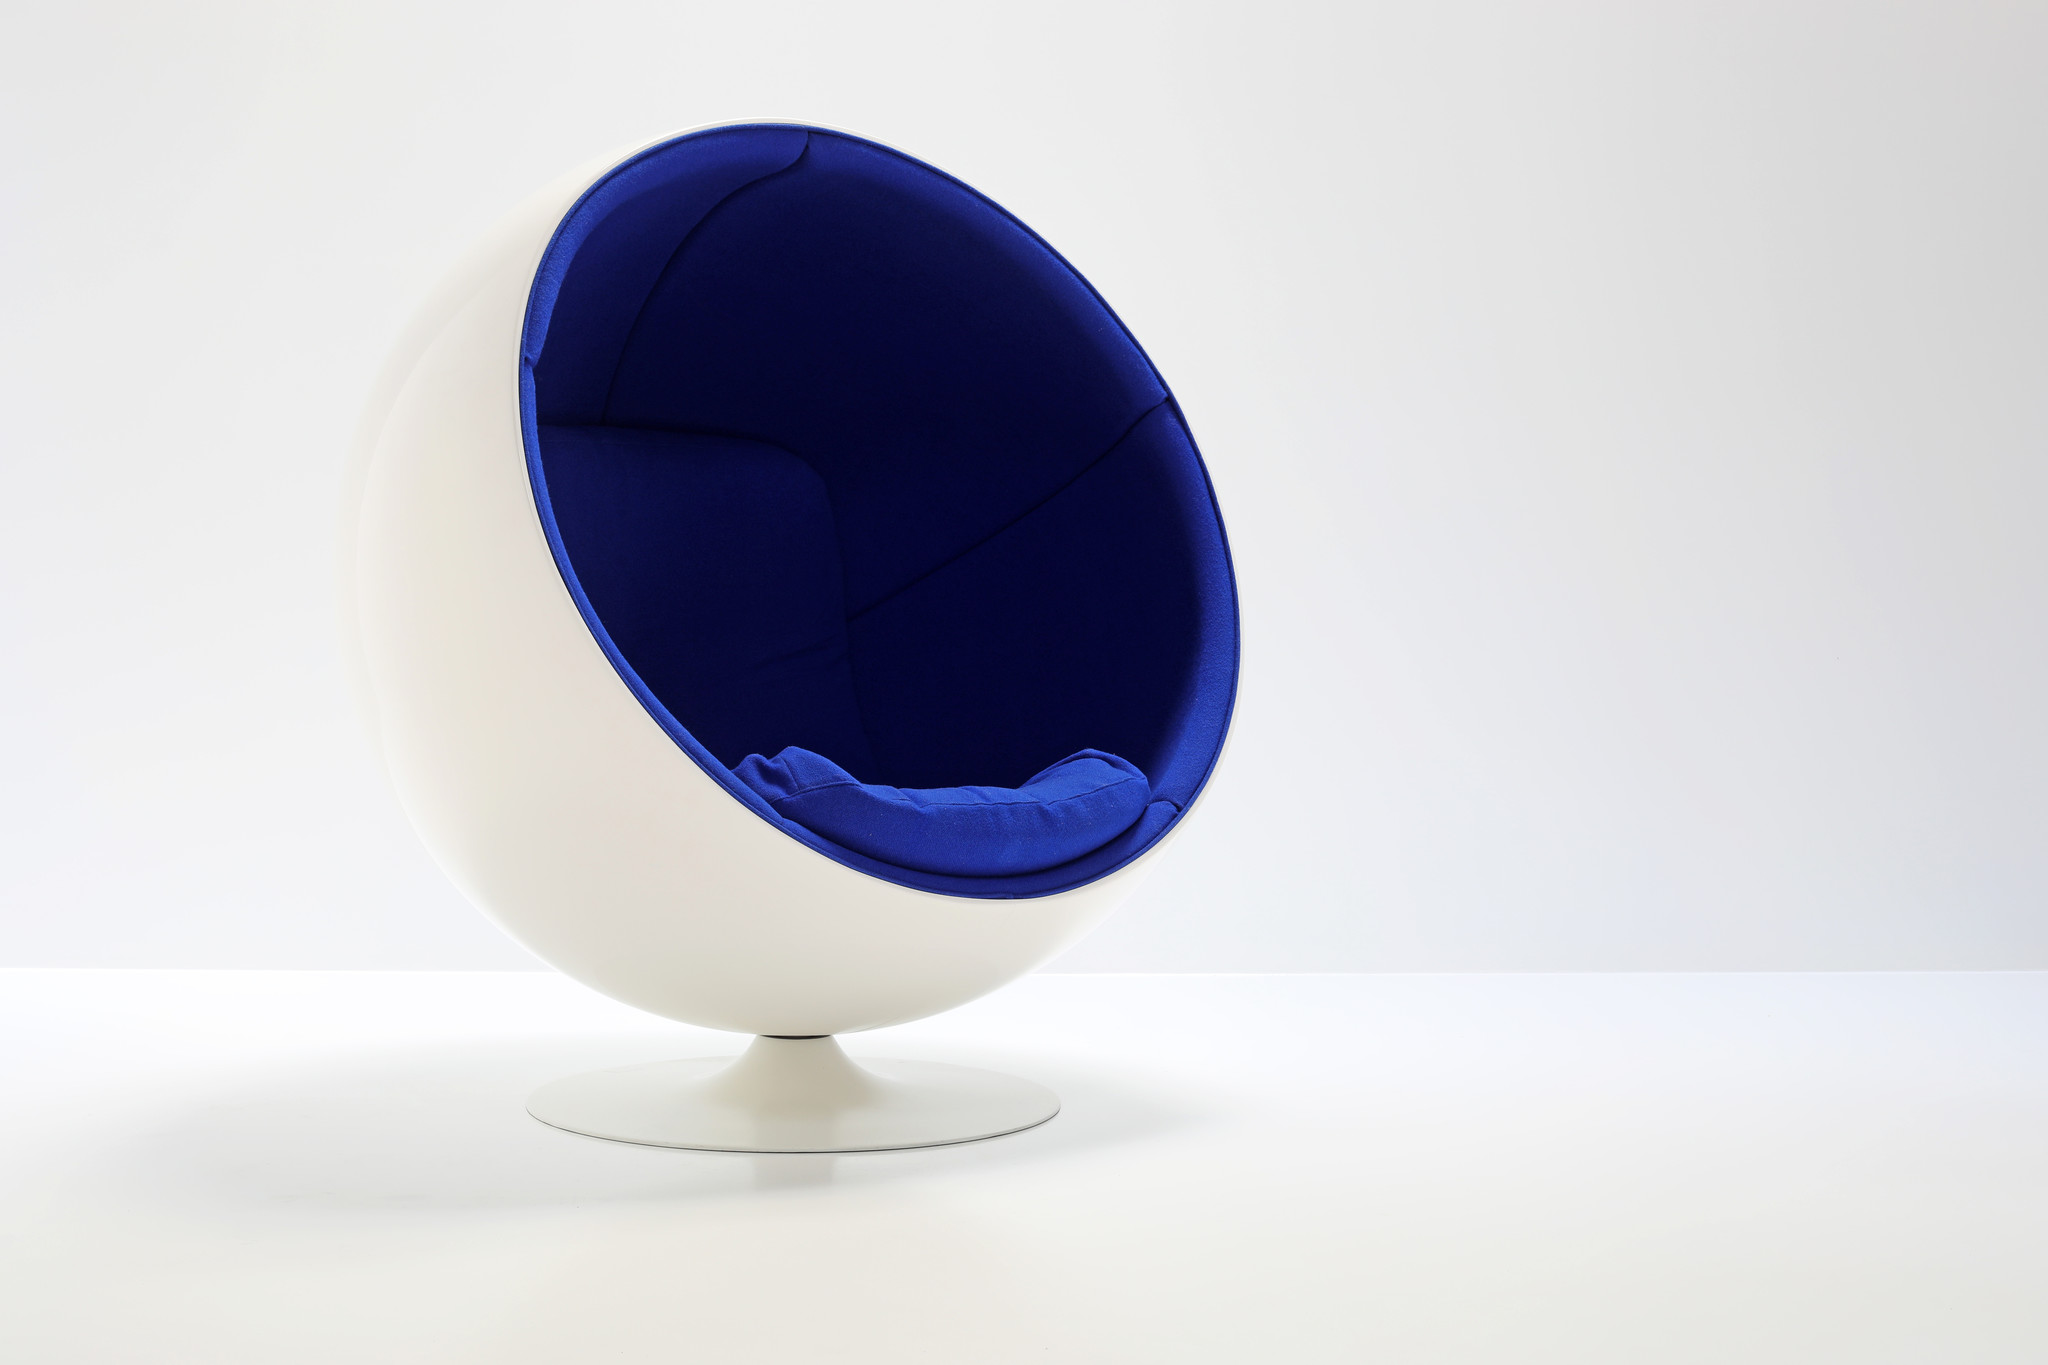 De Ball Chair werd ontworpen door Eero Aarnio voor Adelta.